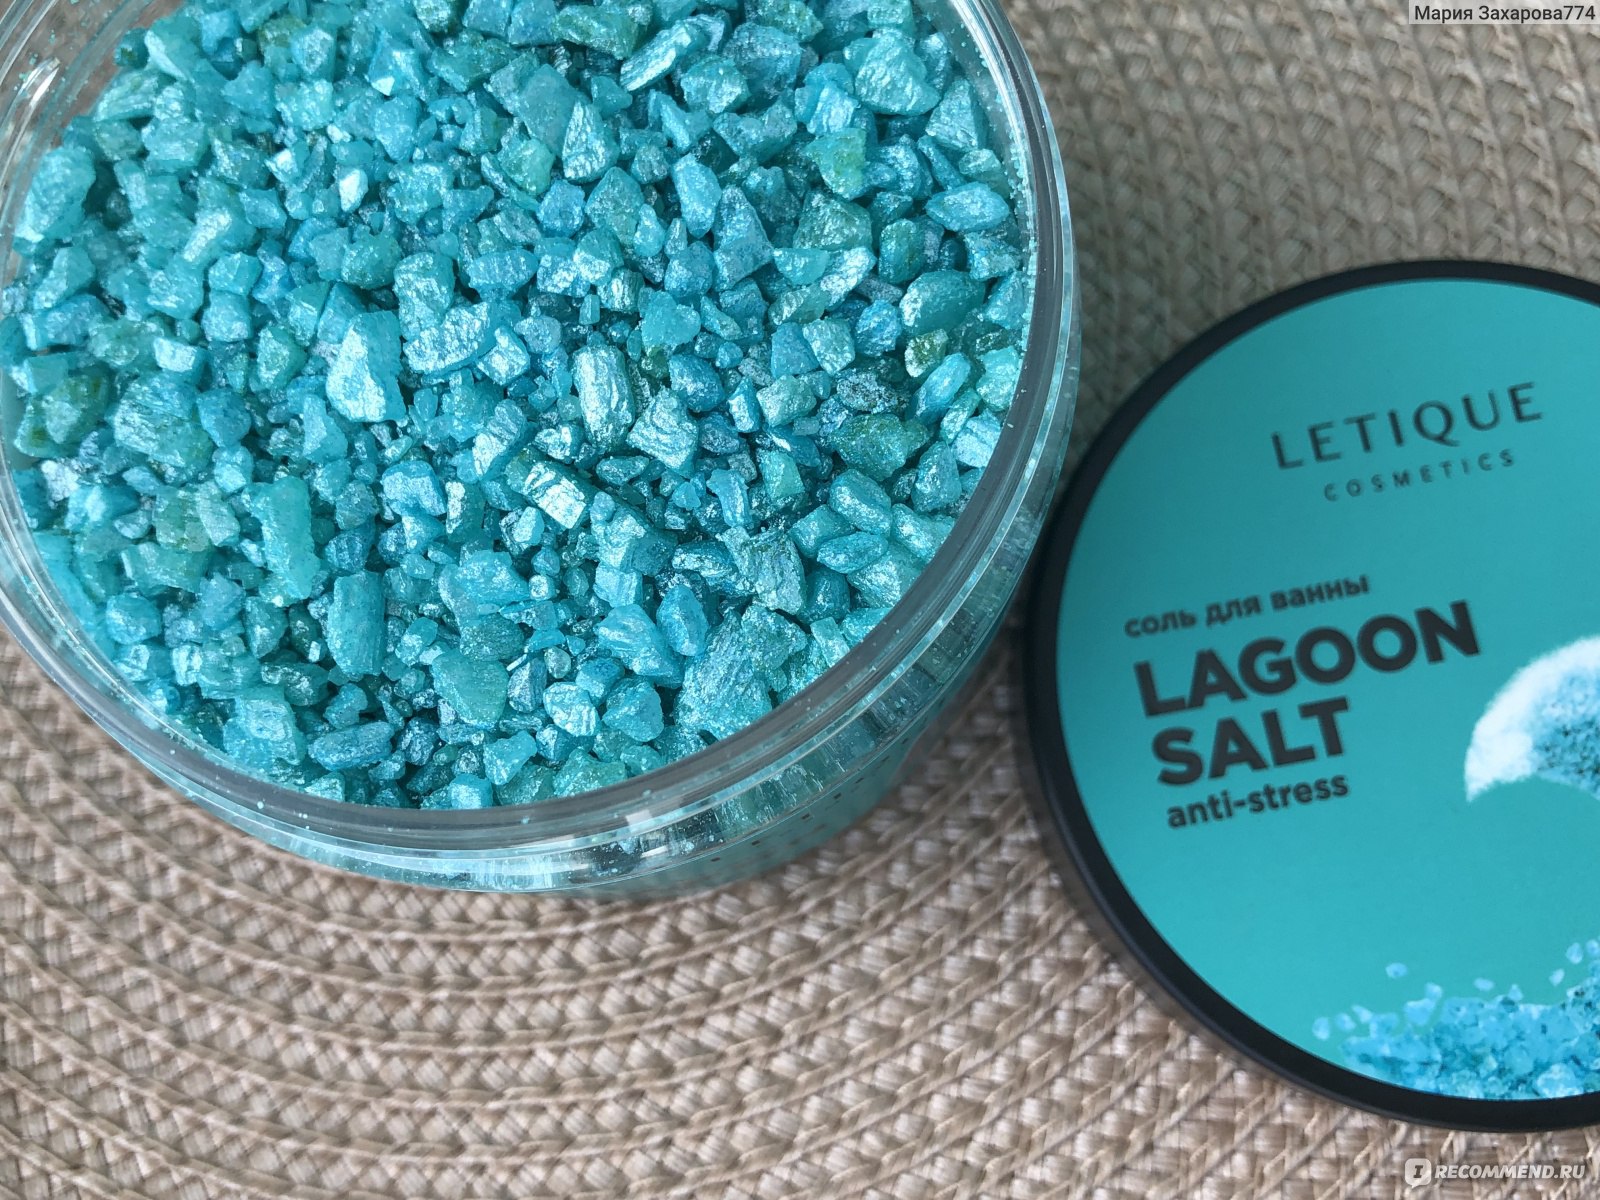 Соль для ванн Letique расслабляющая LAGOON SALT фото